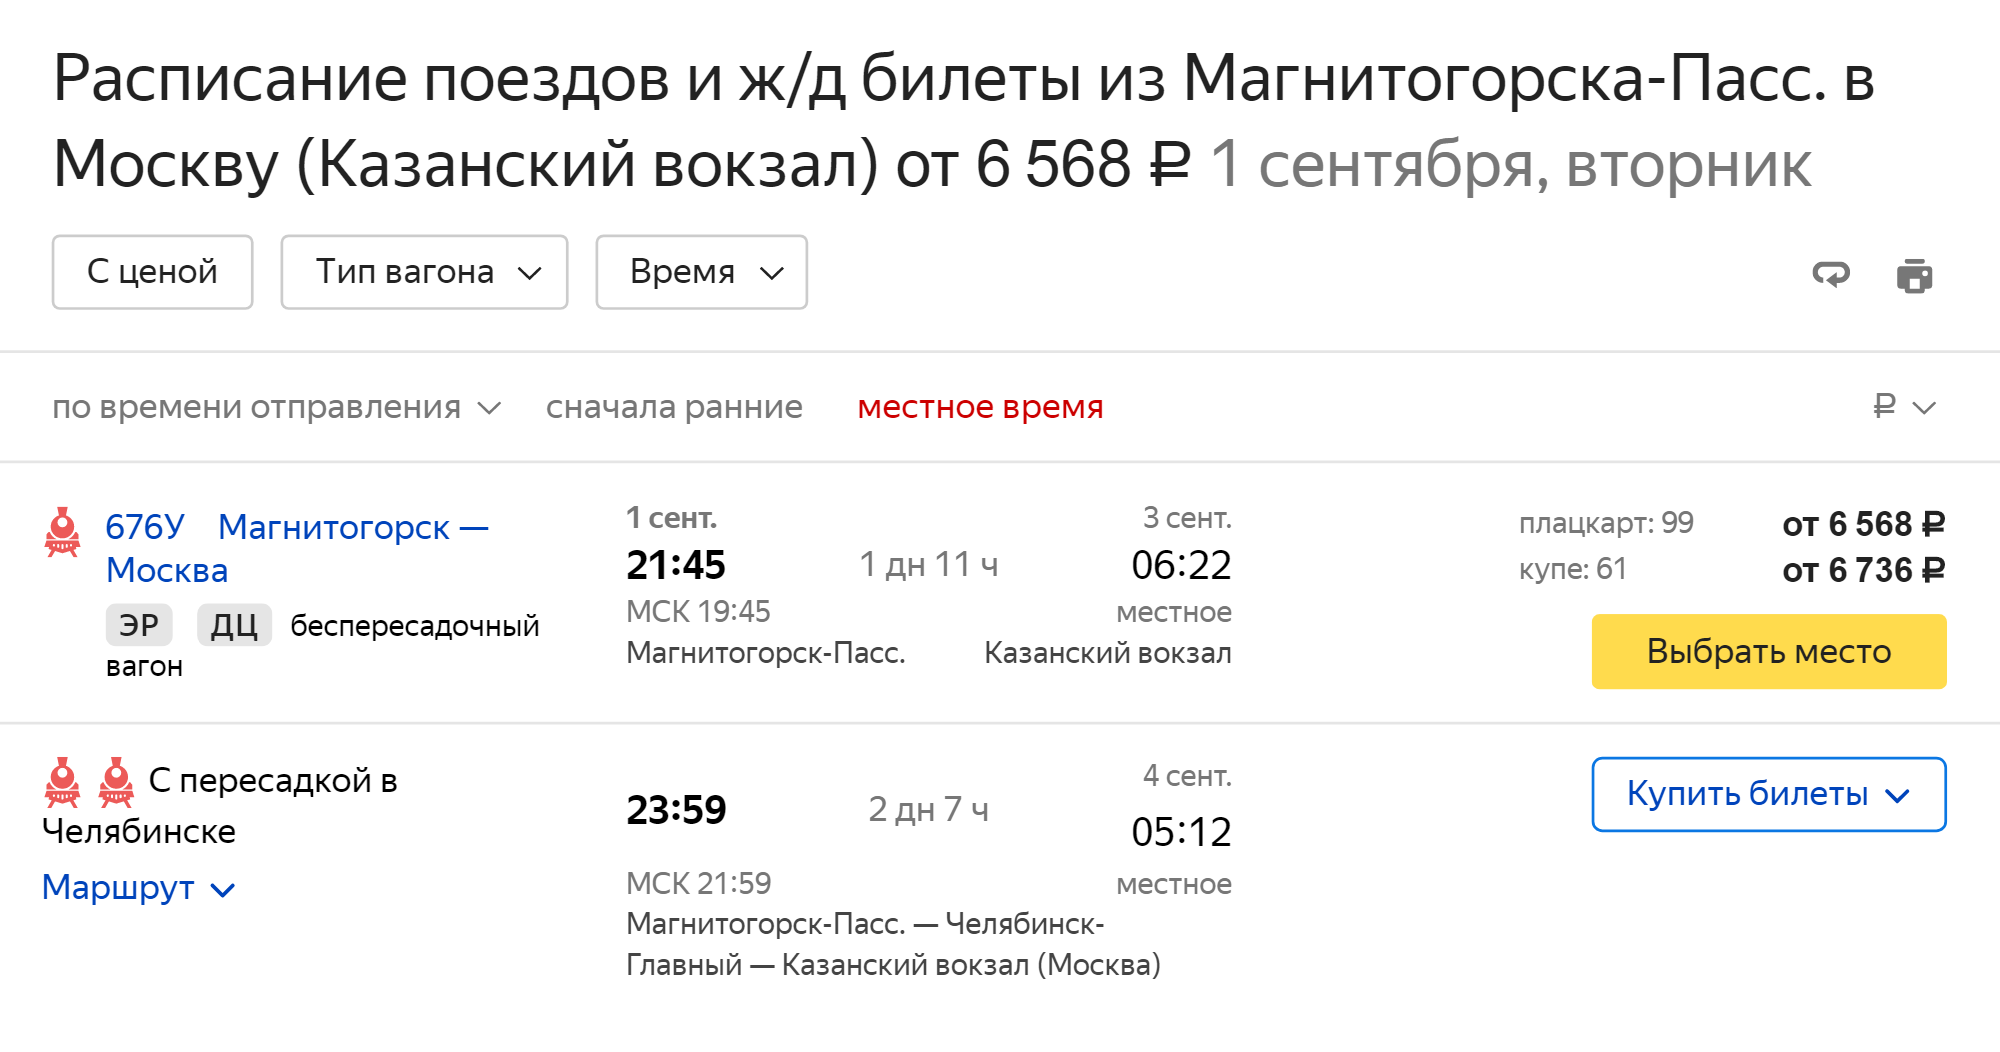 Рейсы в Москву и цены на 1 июня 2020 года